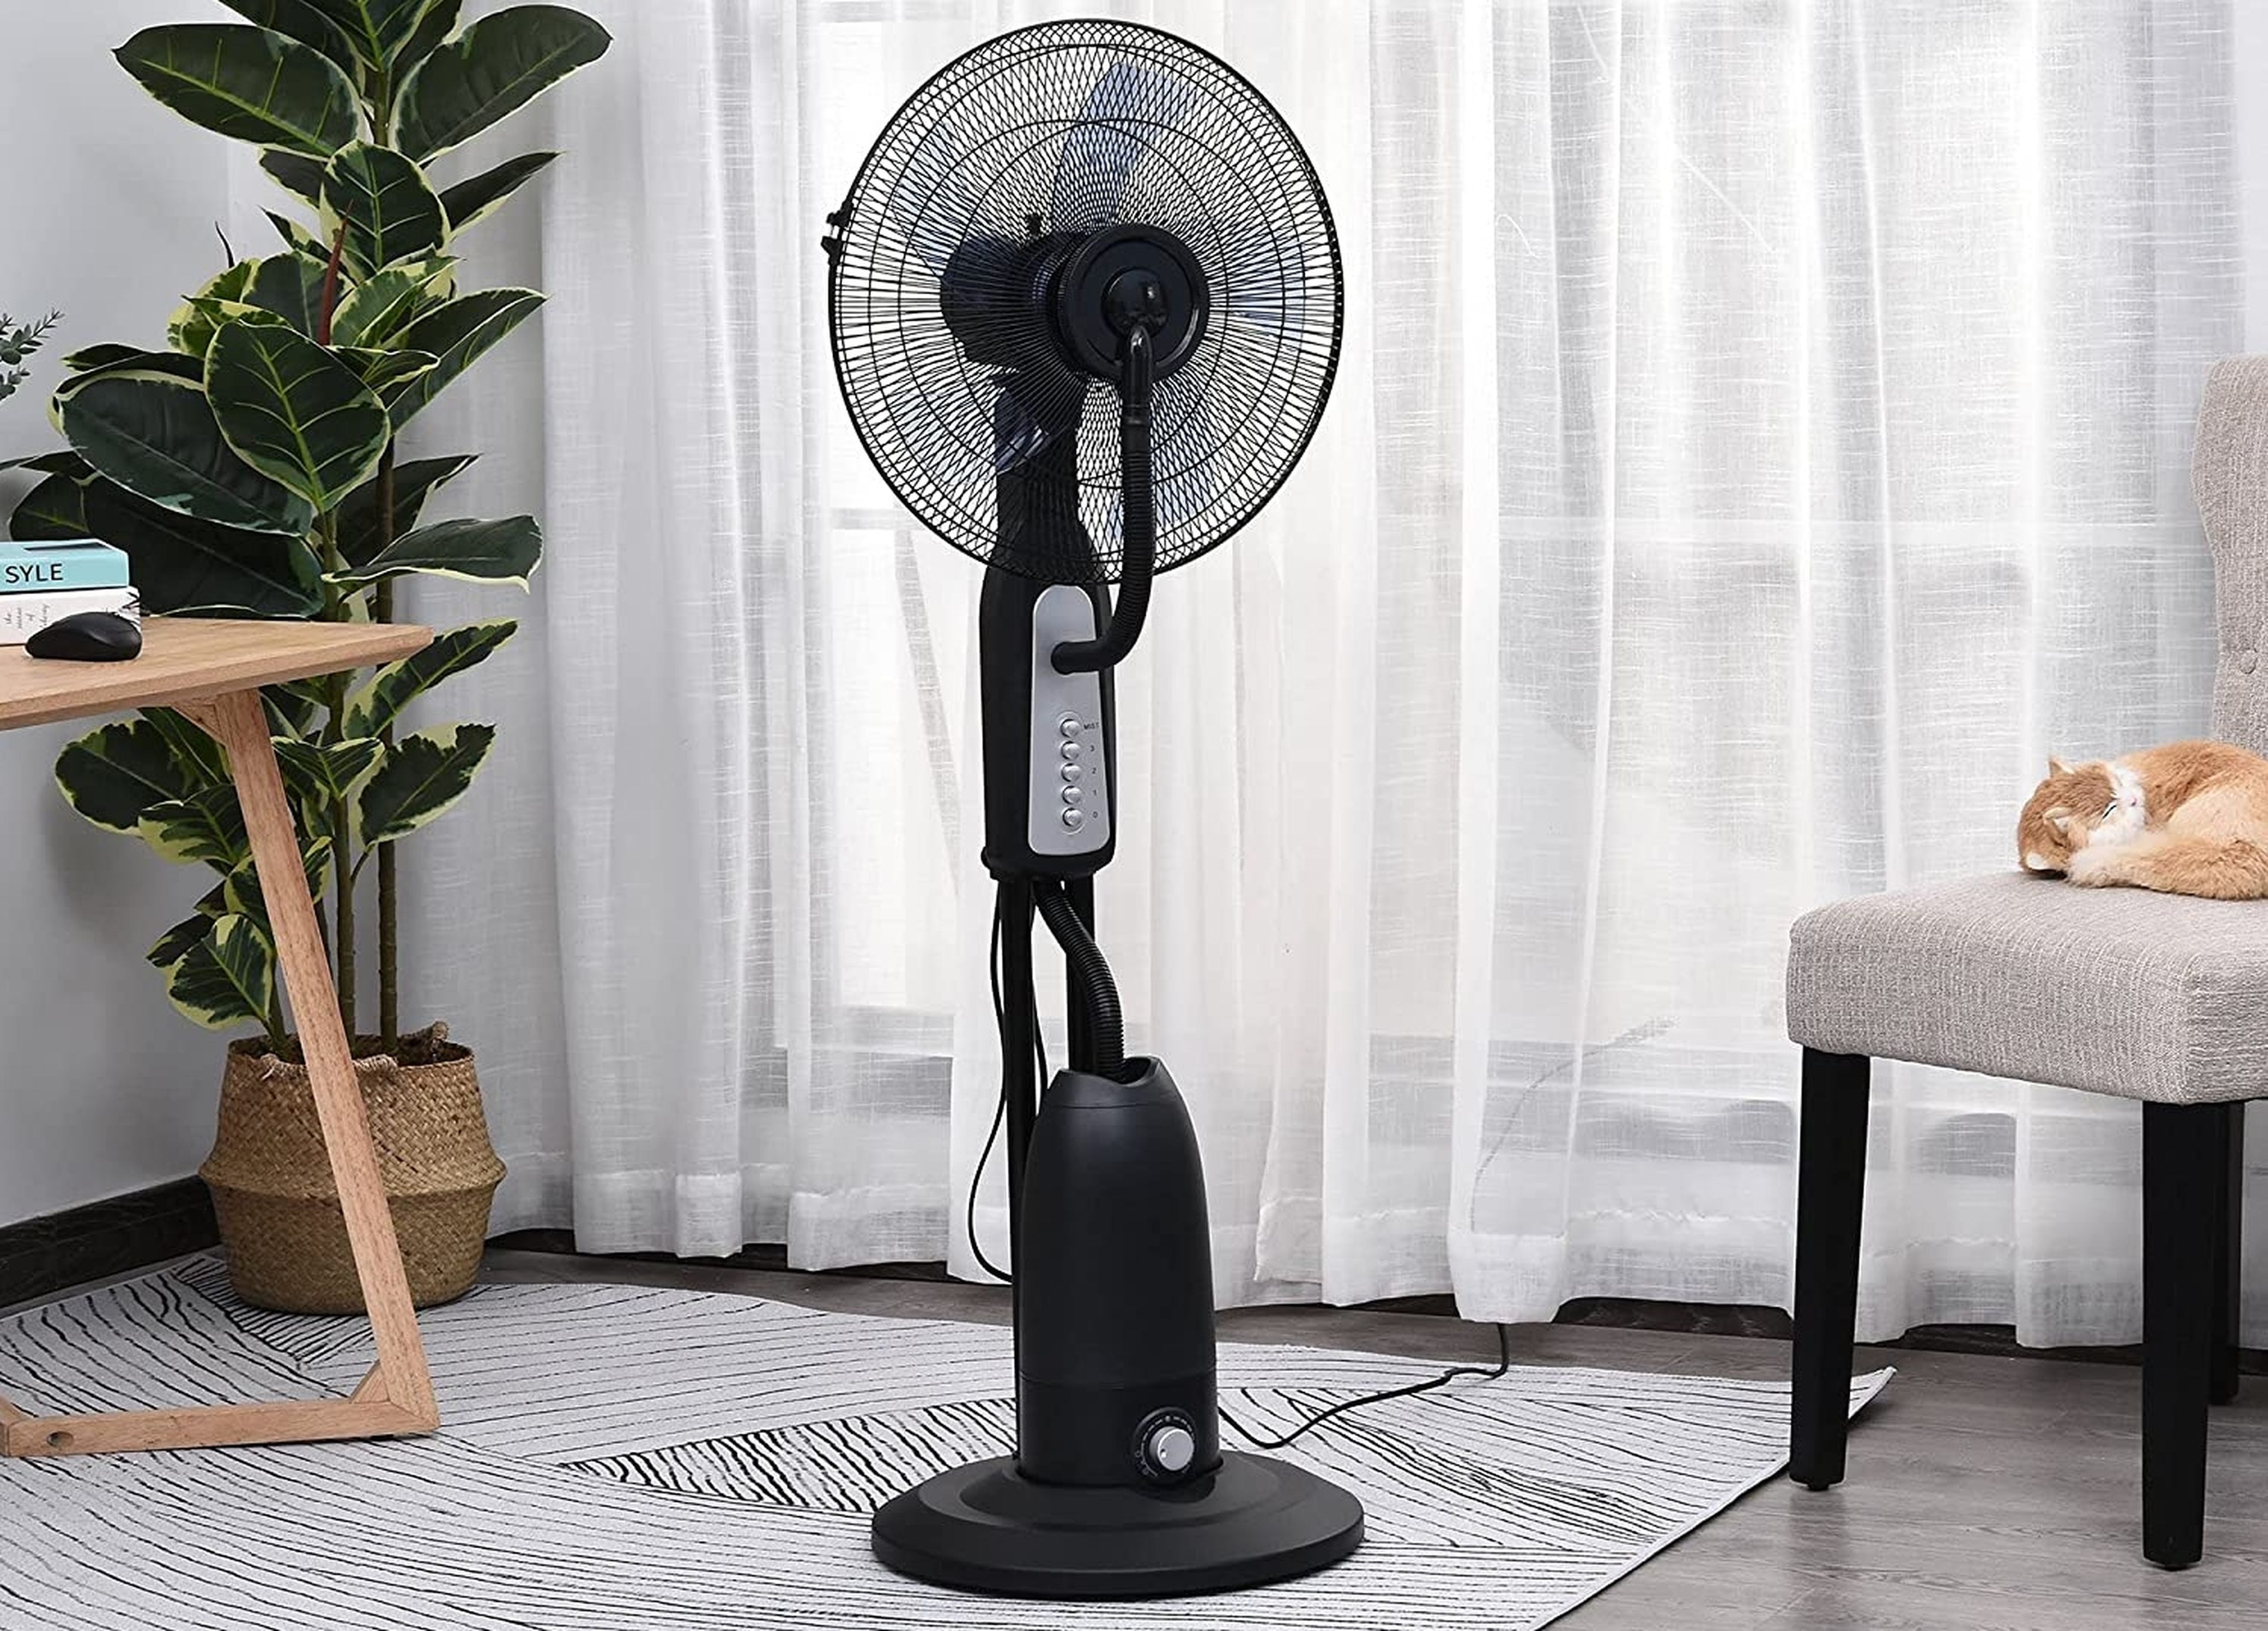 No solo alivia, también refresca: este ventilador con nebulizador solo cuesta 74 euros